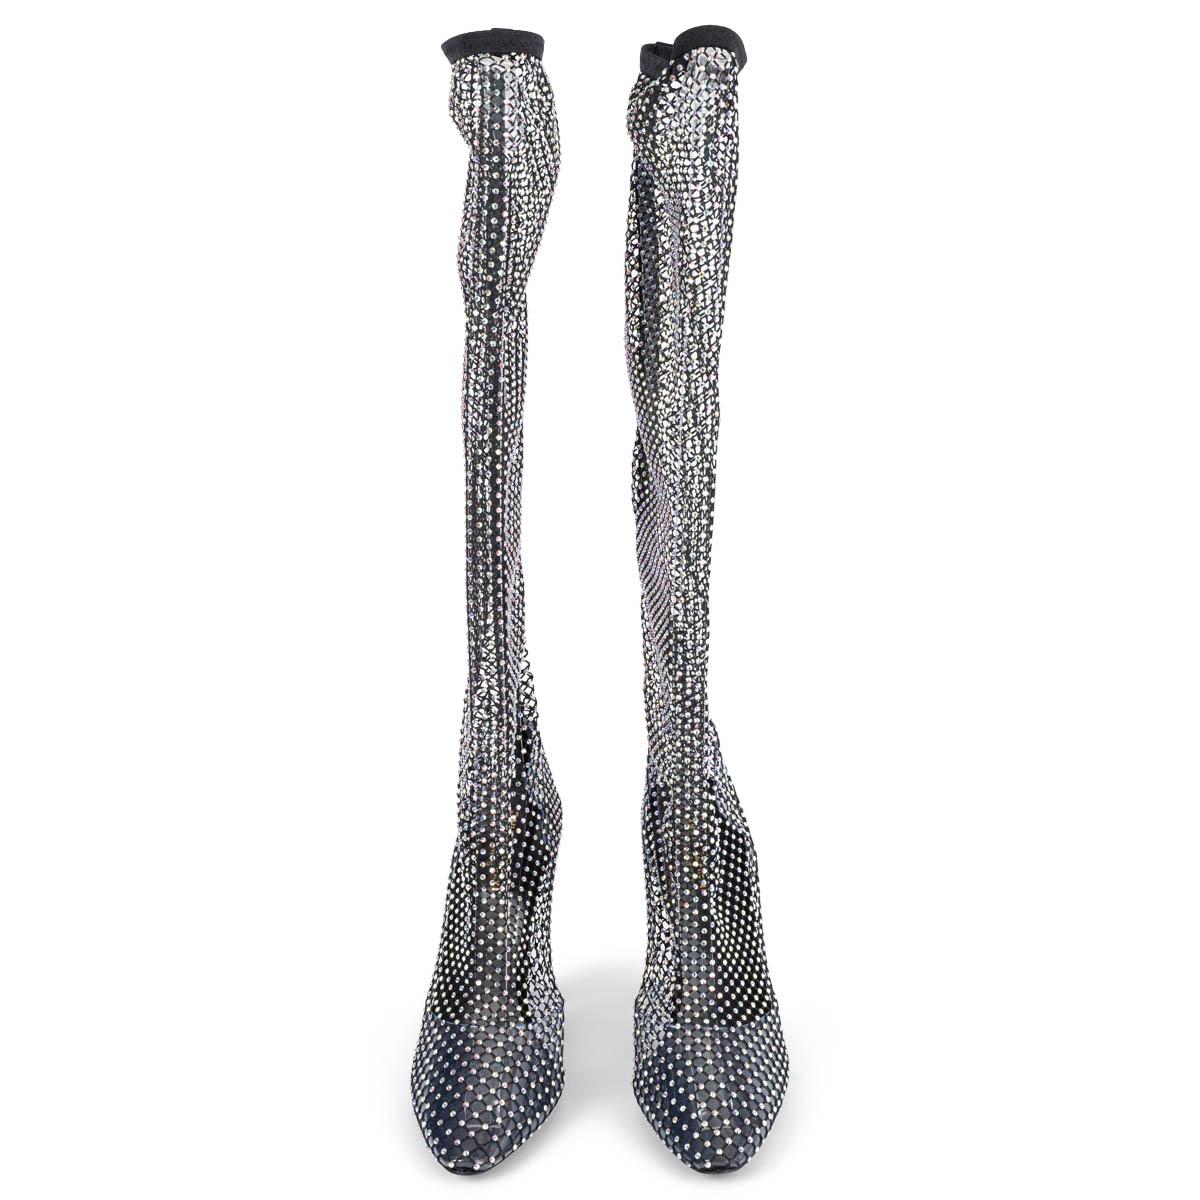 100% authentische Saint Laurent 68 kniehohe Stiefel aus Lurex®-Mesh mit Wildlederbesätzen und Kristallverzierungen. Elastisches Band im oberen Bereich. Sie wurden einmal getragen und sind in praktisch neuem Zustand. Lieferung mit Staubbeuteln.